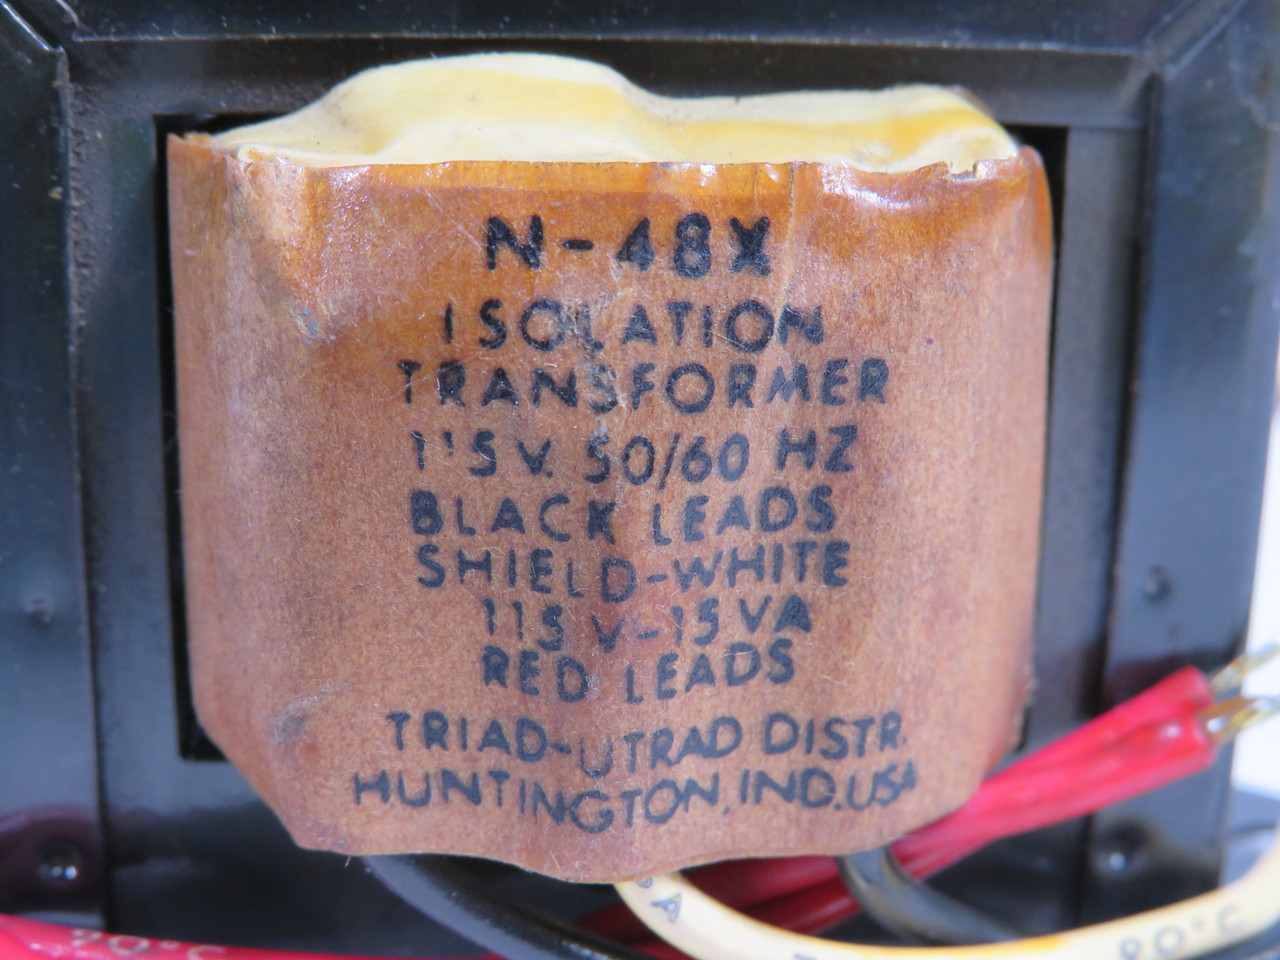 Triad-Utrad N-48X Isolation Transformer 15VA 115V 50/60Hz USED